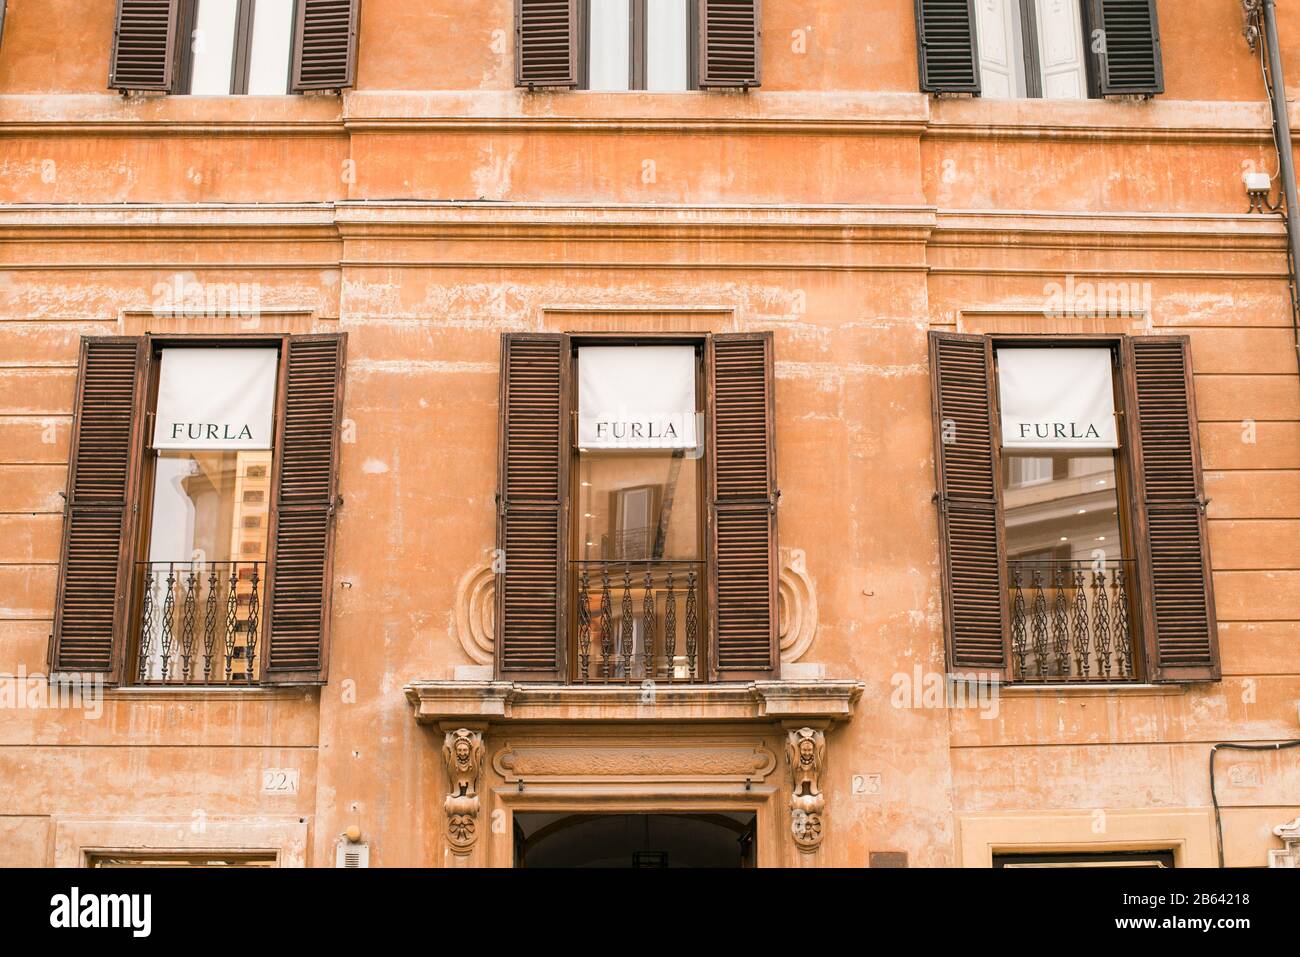 Roma. Italia - 22 Marzo 2017: Vista Esterna Del Negozio Furla Di Roma Vicino A Piazza Di Spagna. Furla è un'azienda italiana di moda di lusso. Foto Stock